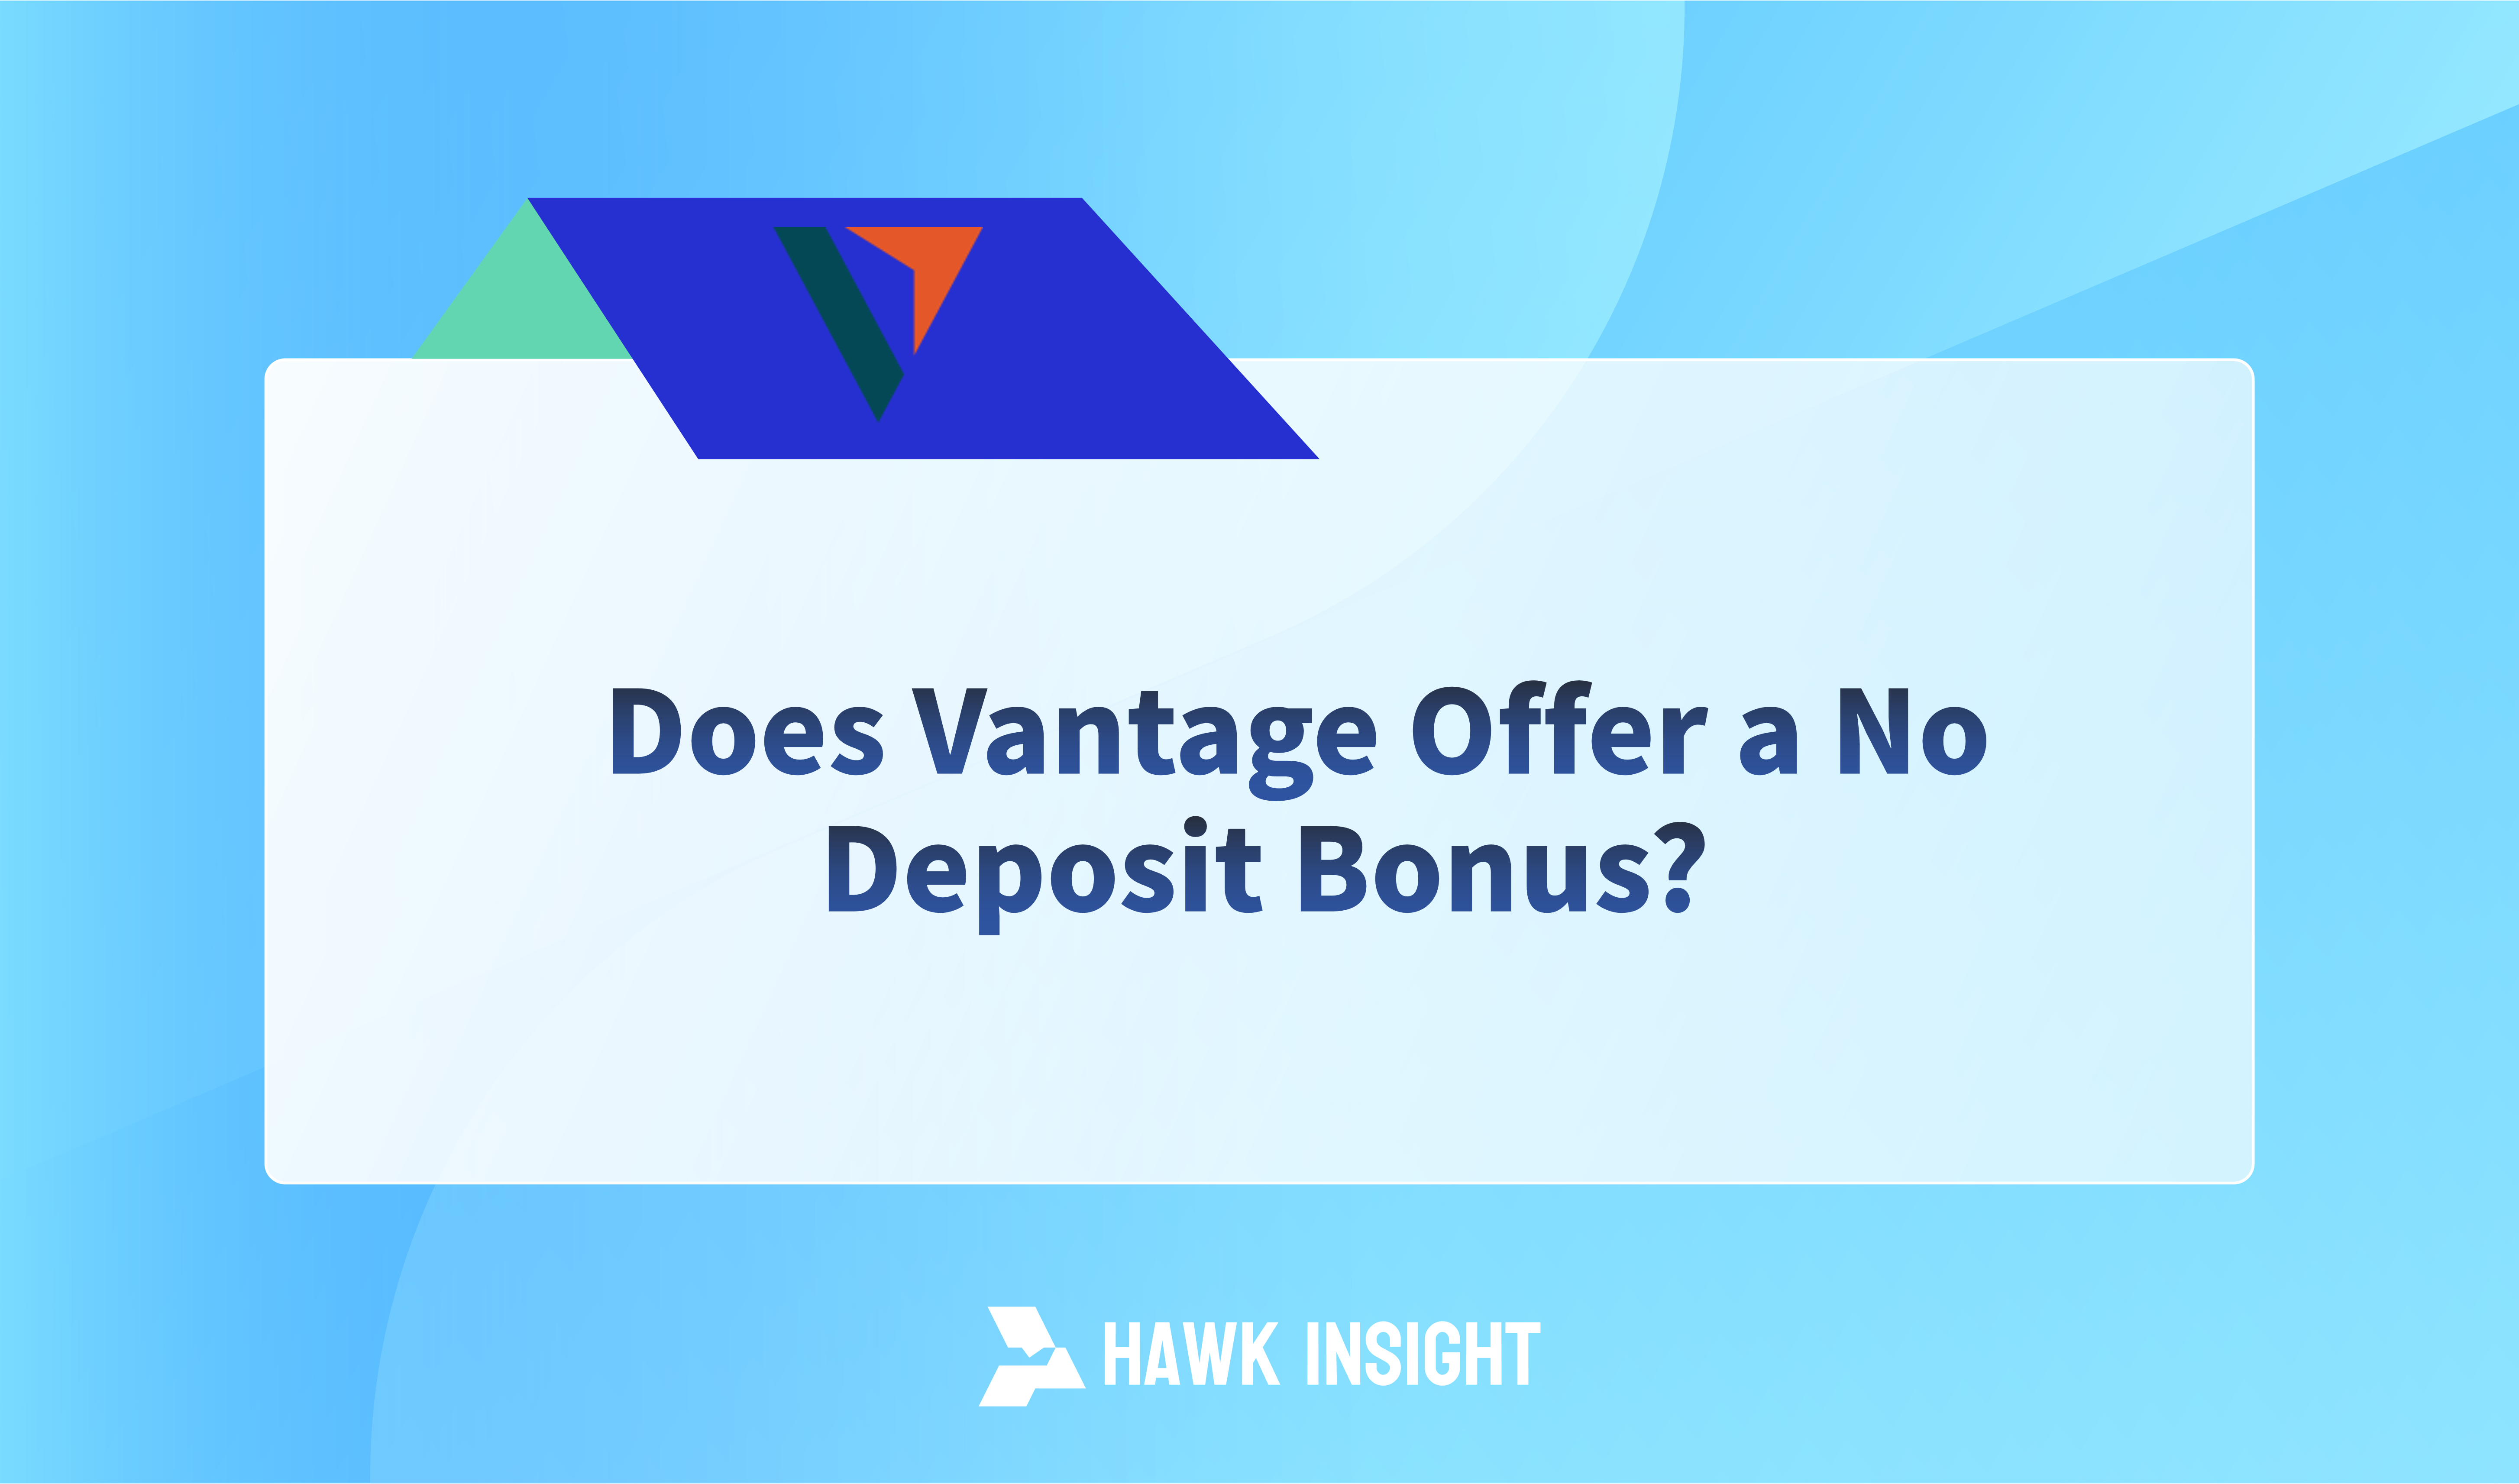 Does Vantage Offer a No Deposit Bonus?